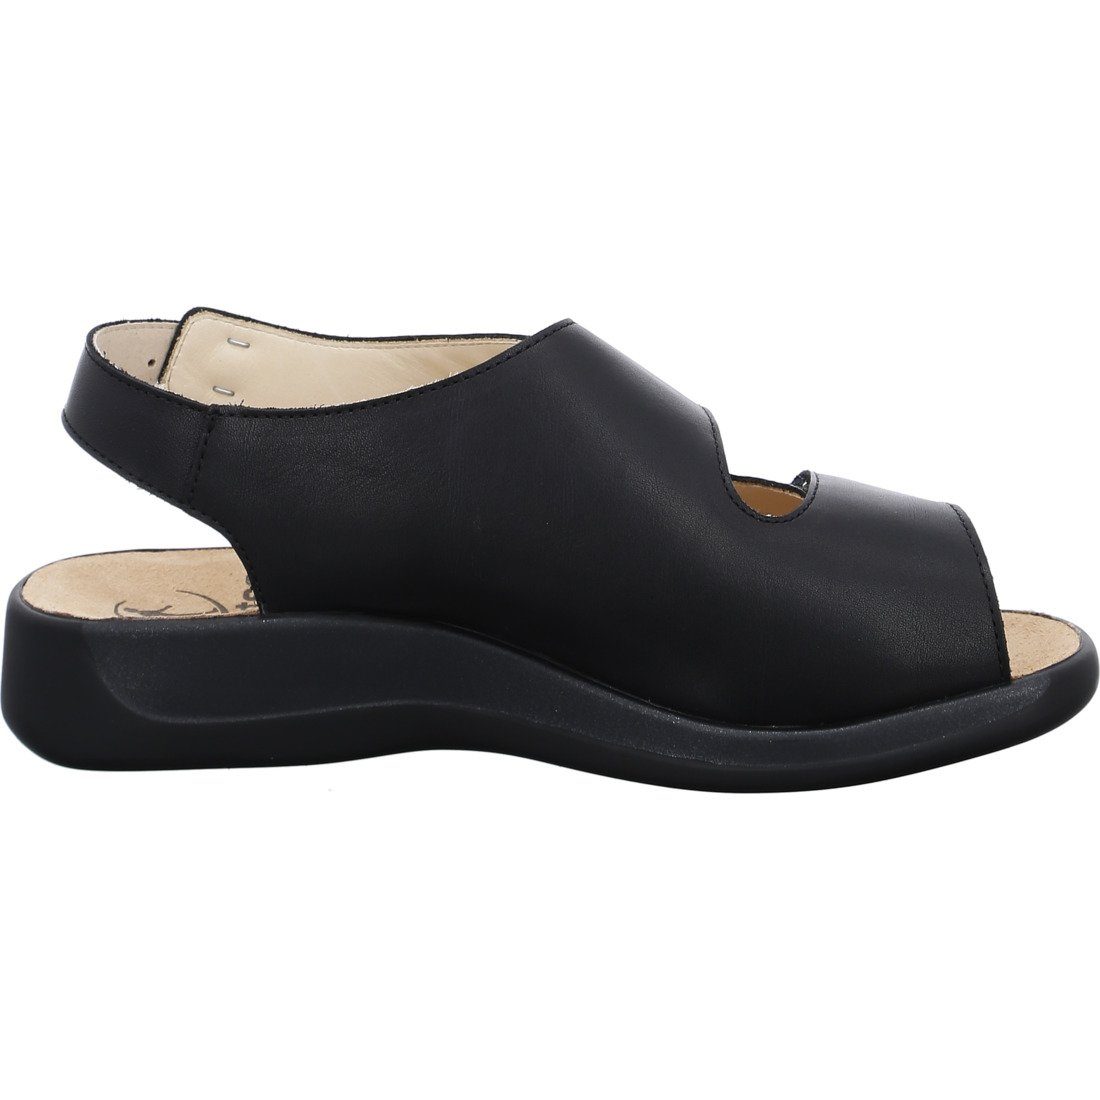 Sandalette schwarz - Ganter Monica 045895 Ganter Materialmix Sandalette Schuhe,